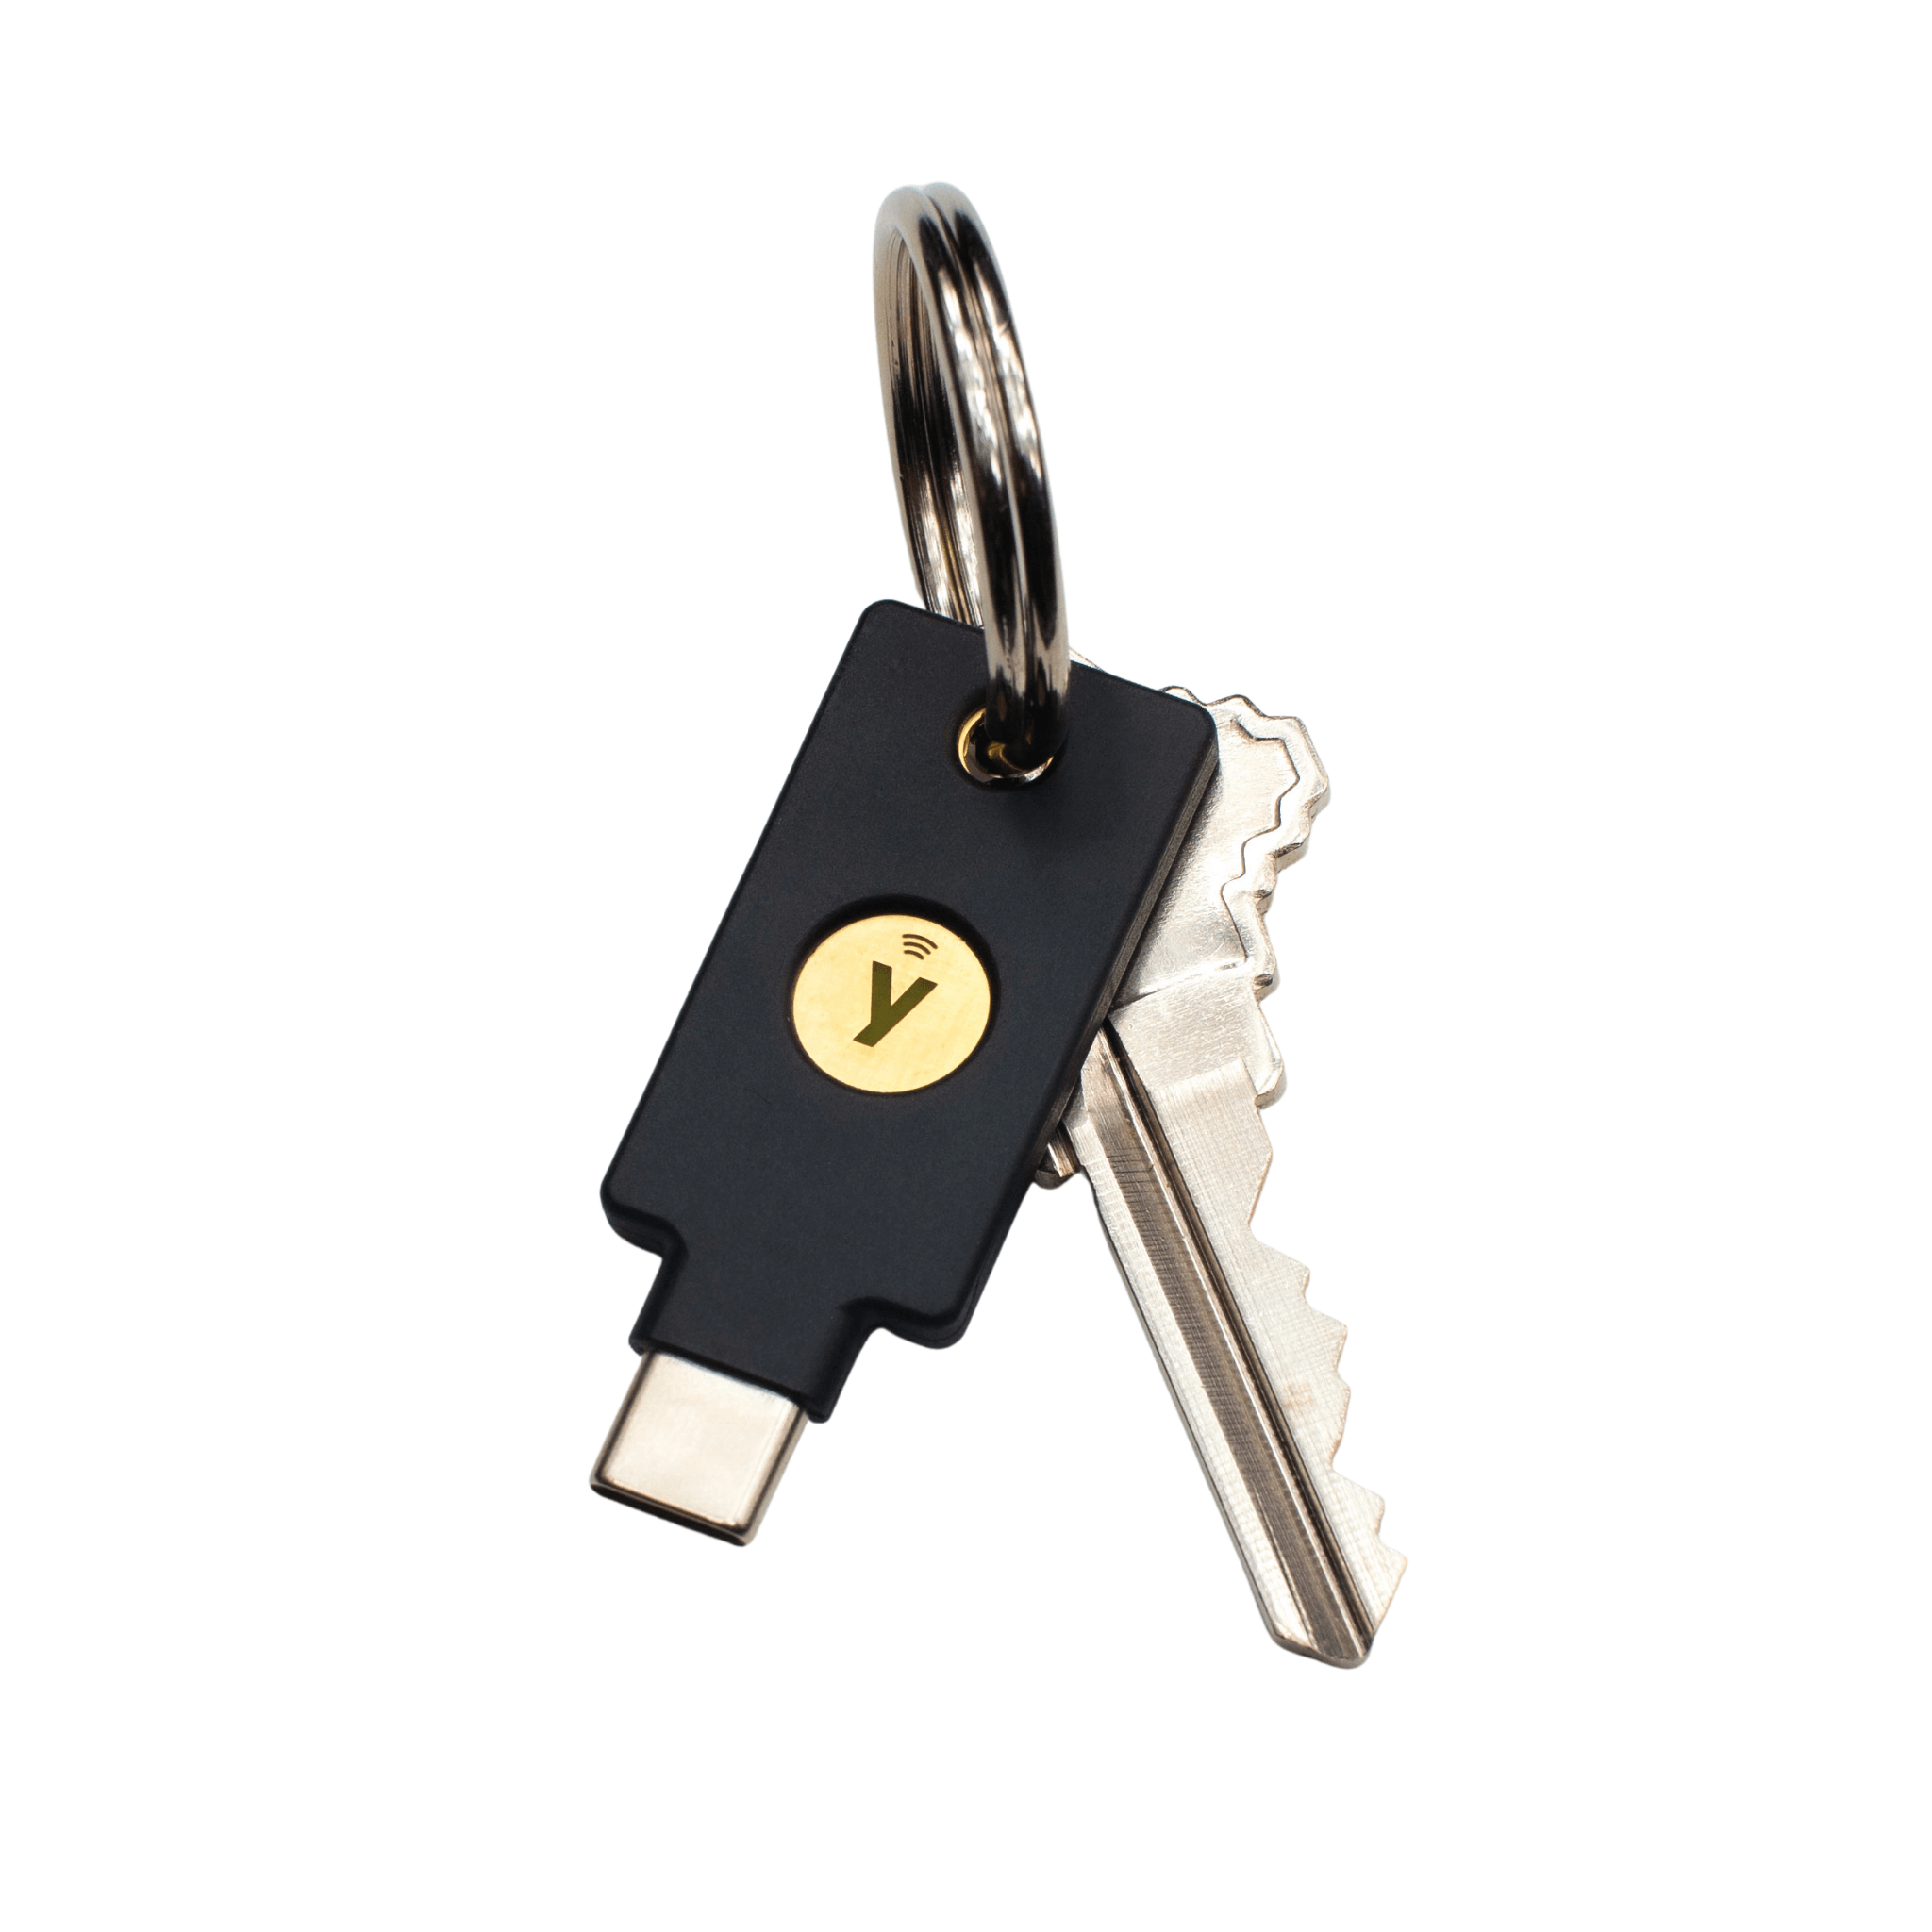 Yubico YubiKey 5C NFC Security Key On A Keychain